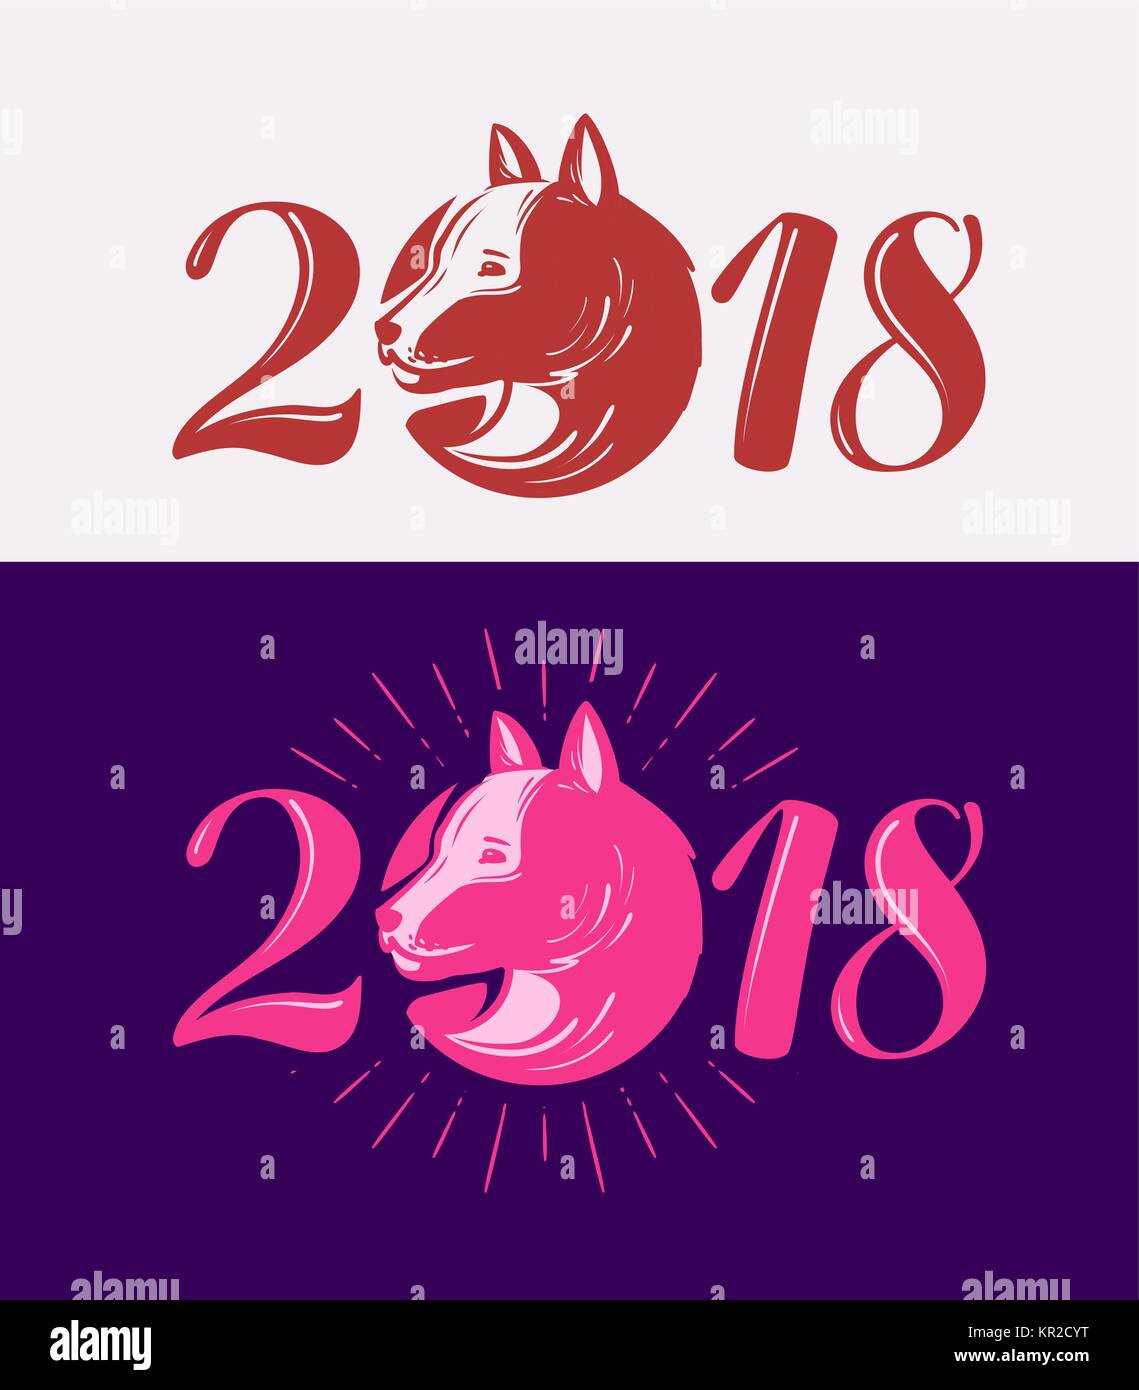 2018, Frohes neues Jahr. Hund Symbol. Typografische Gestaltung Vector Illustration Stock Vektor